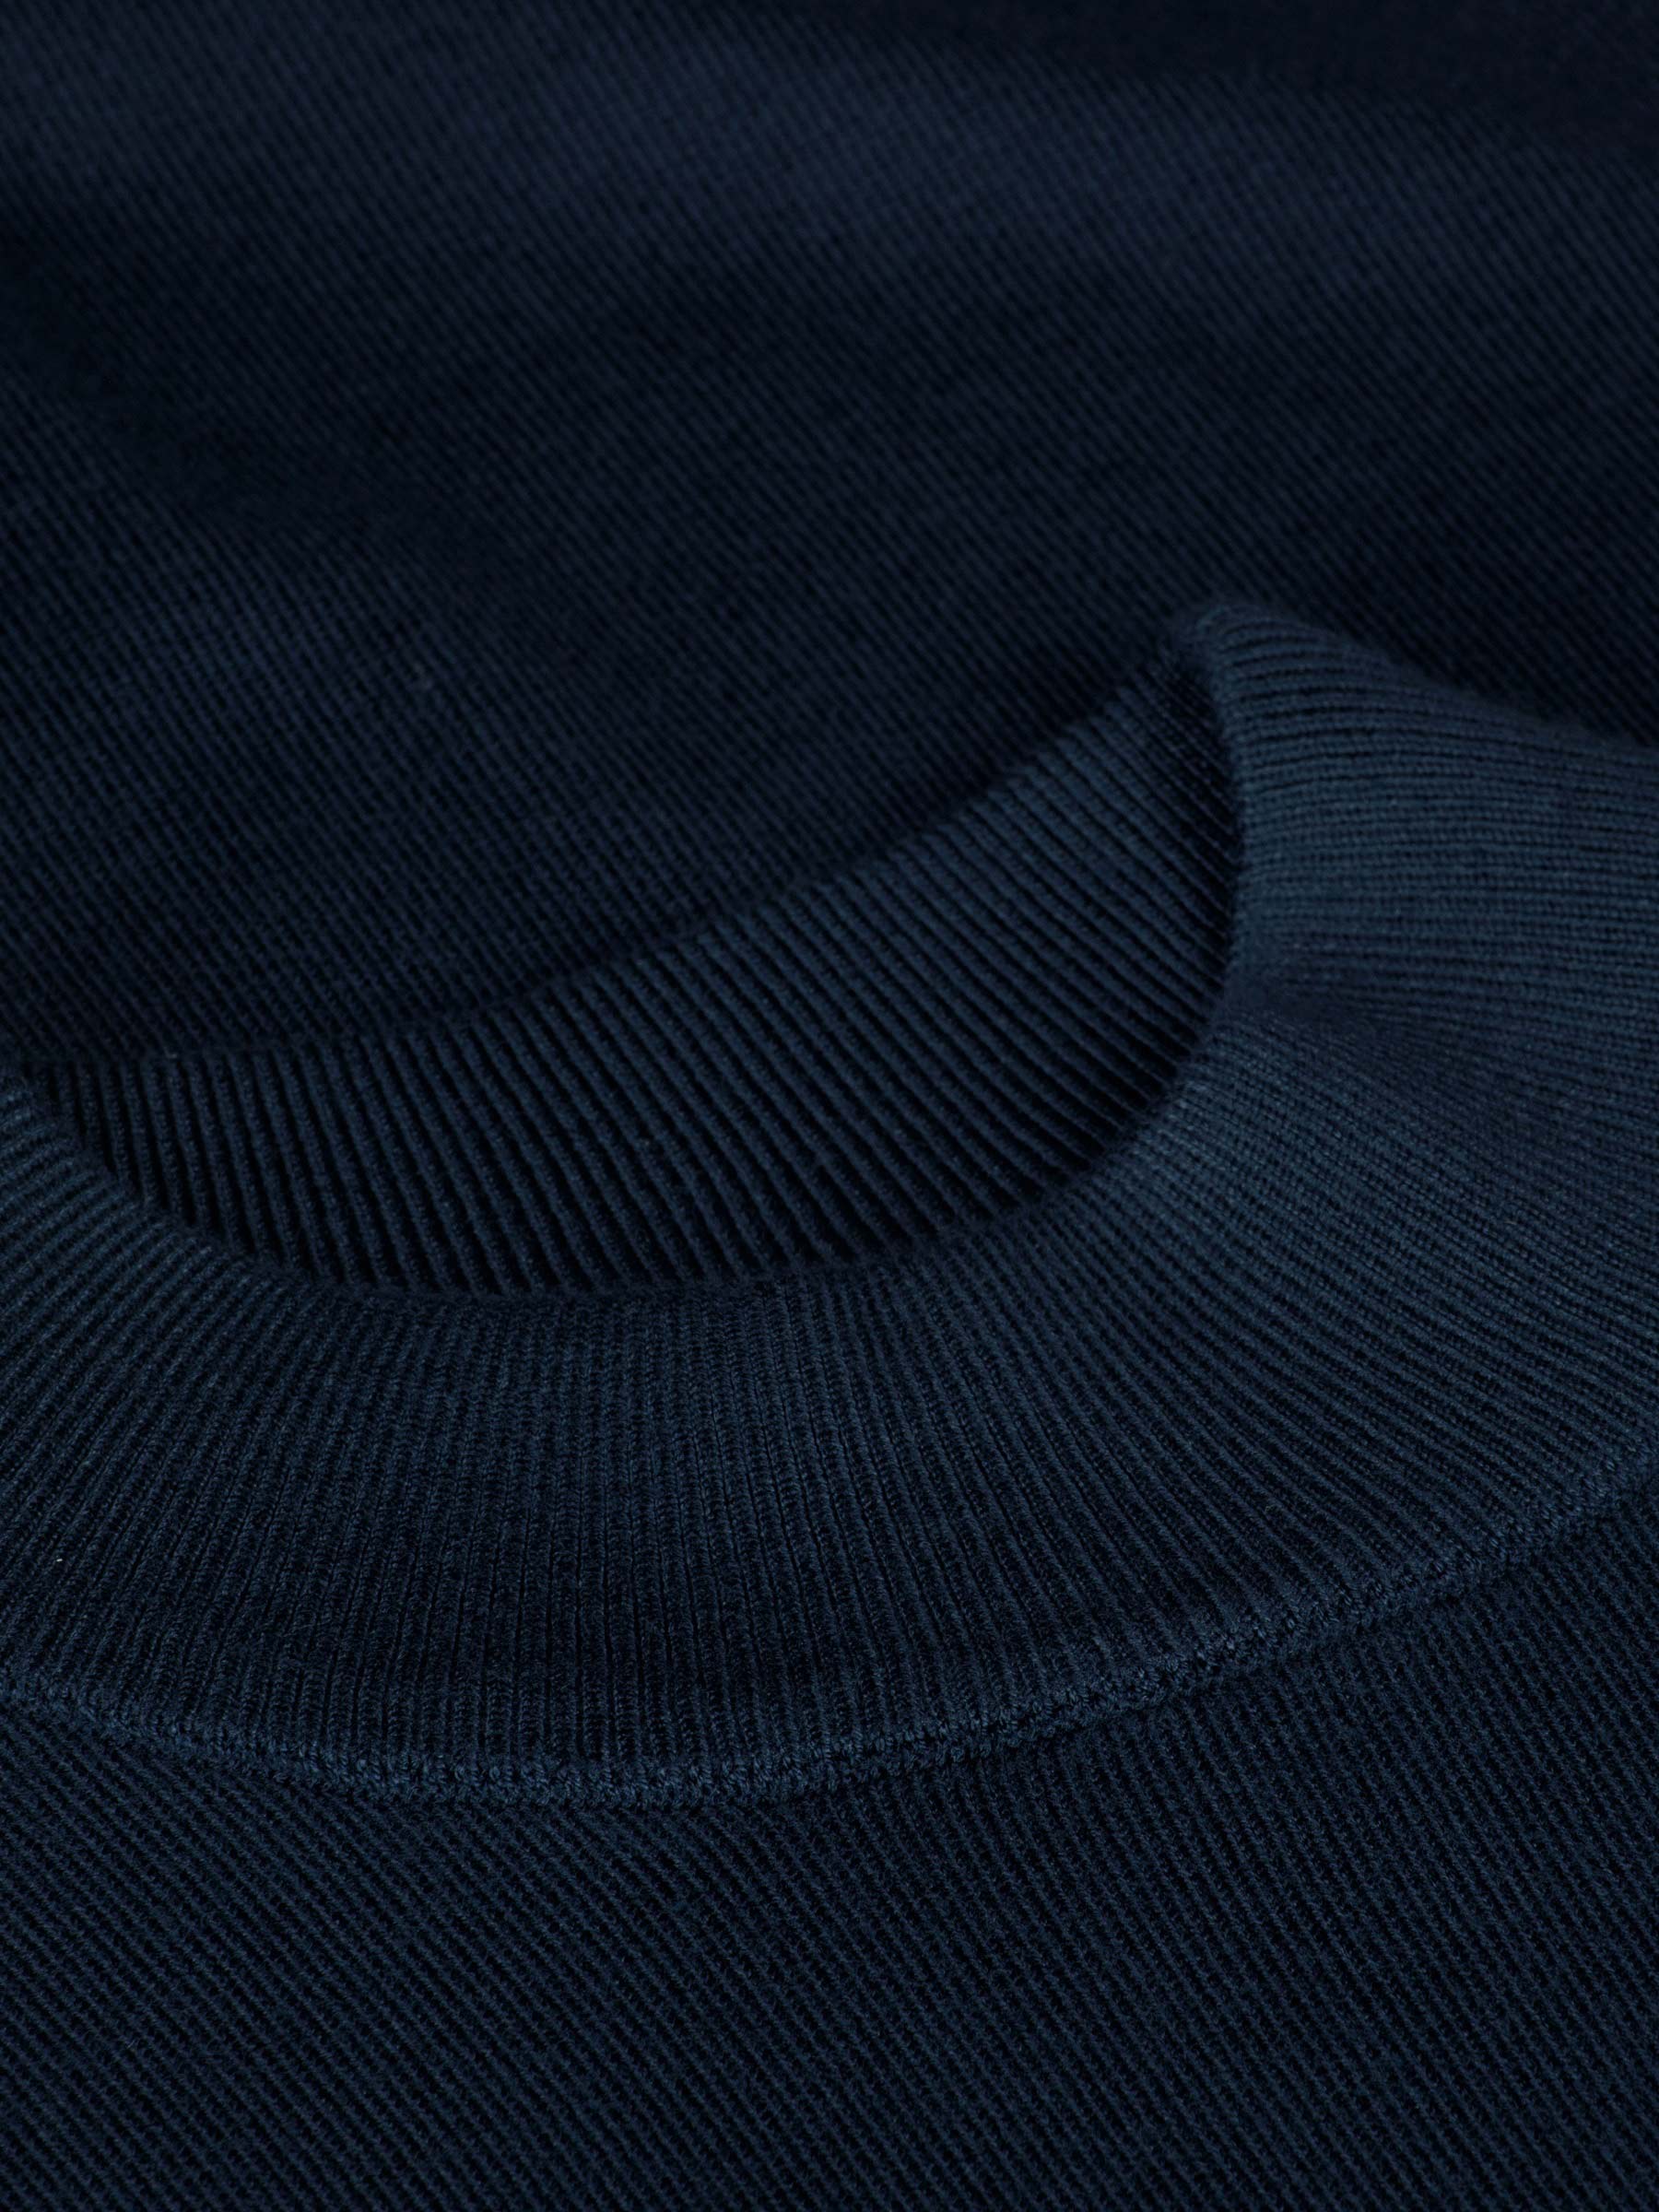 Siena Round-Necked Navy Sweater